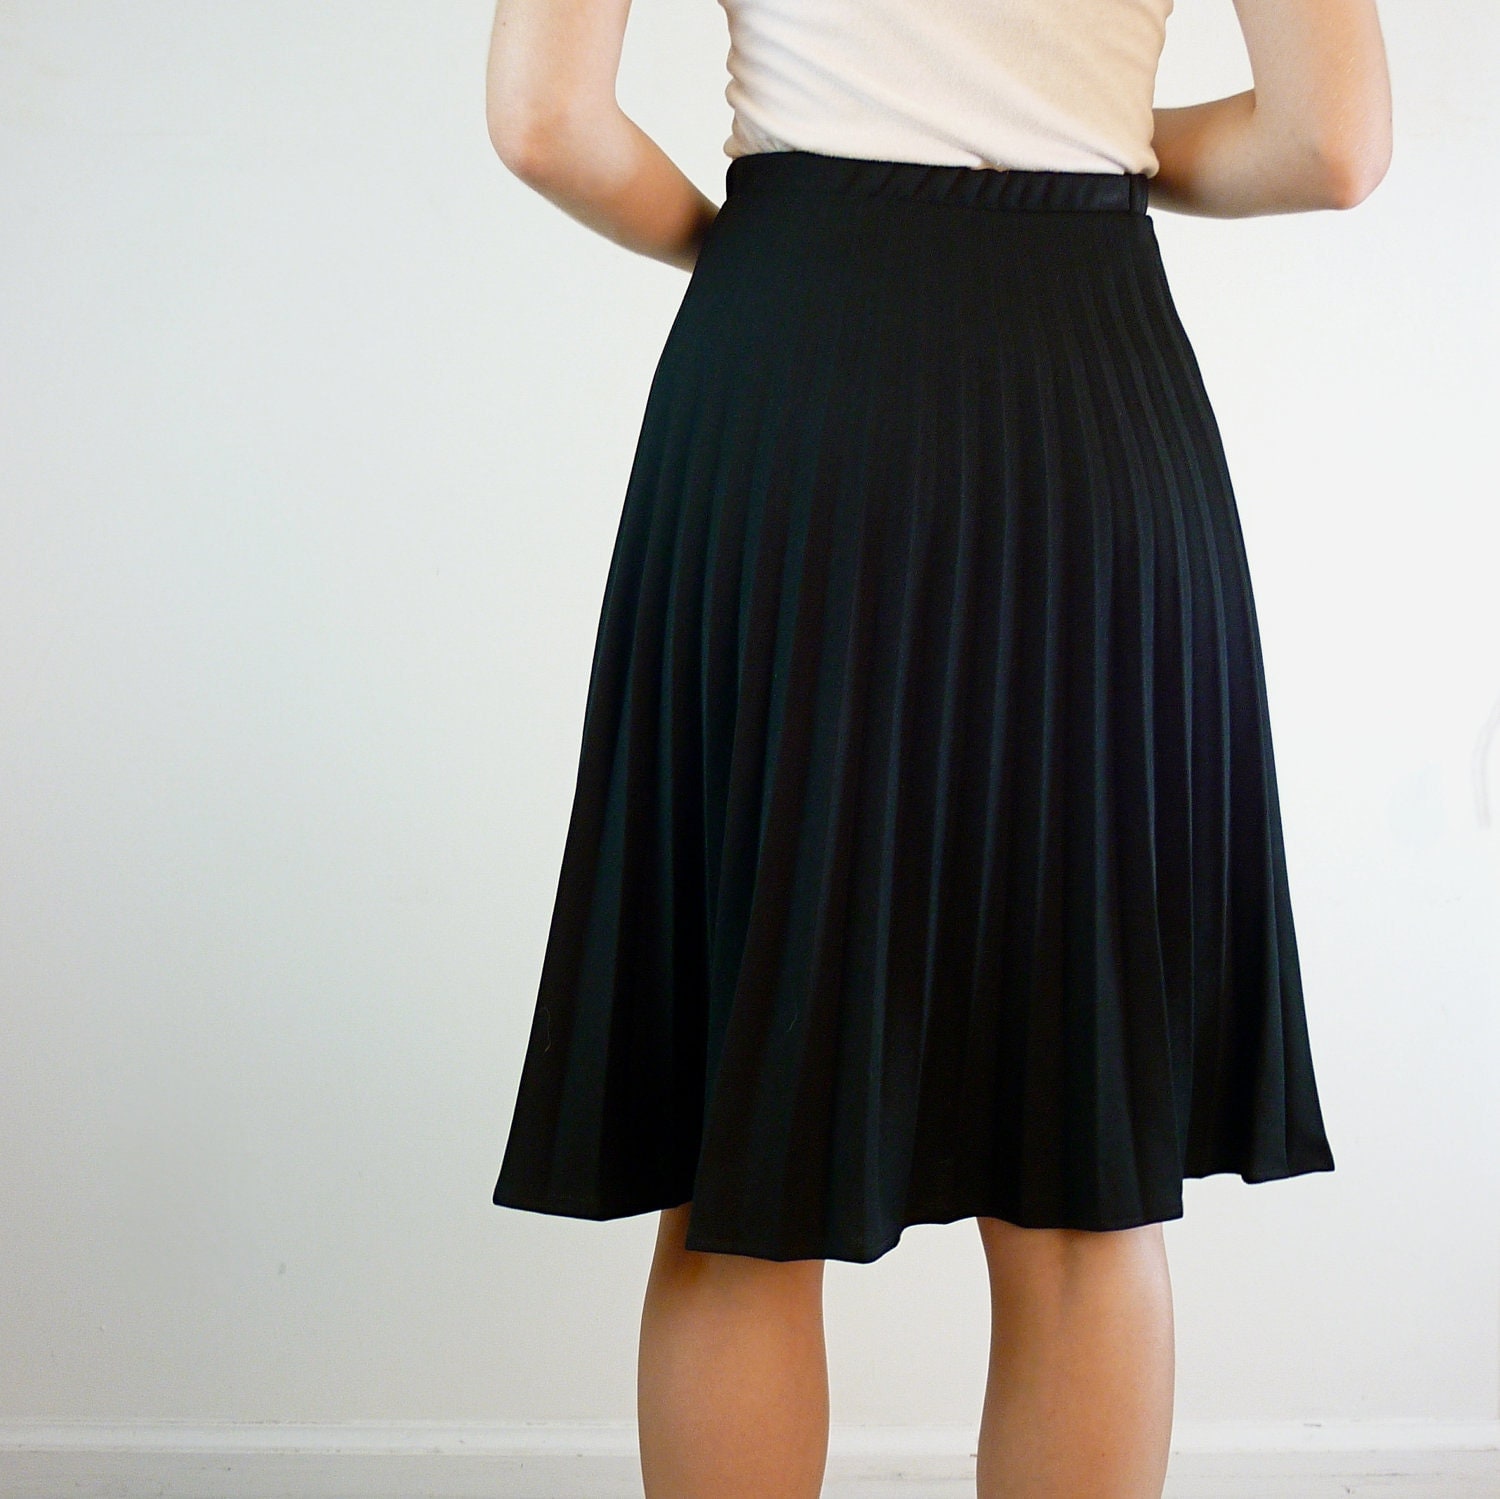 Black Pleated Skirt Plus Size Accordion Pleated Skirt